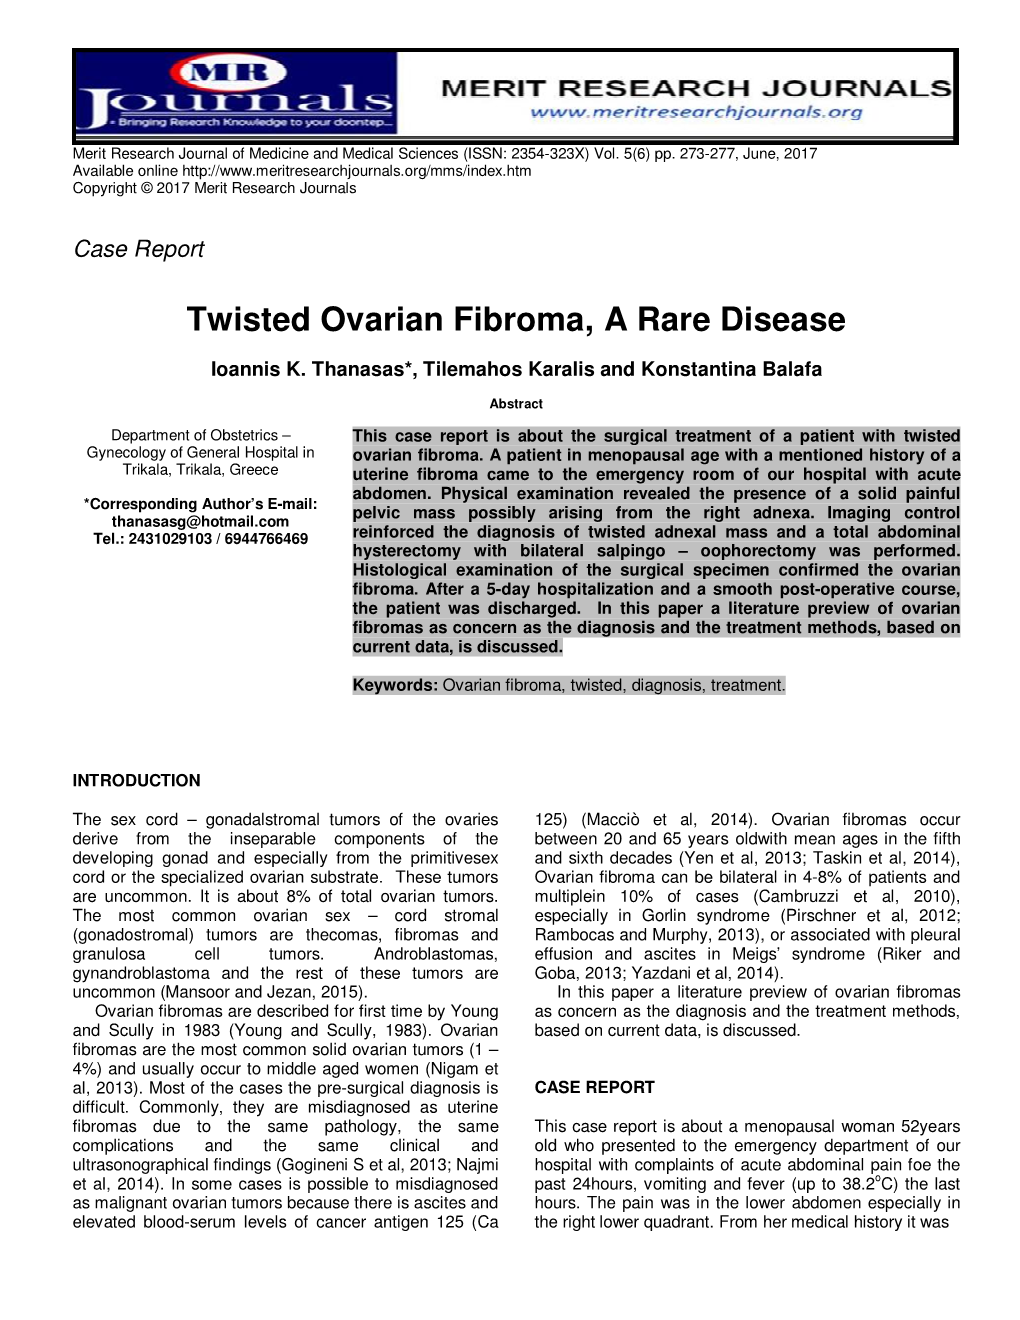 Twisted Ovarian Fibroma, a Rare Disease